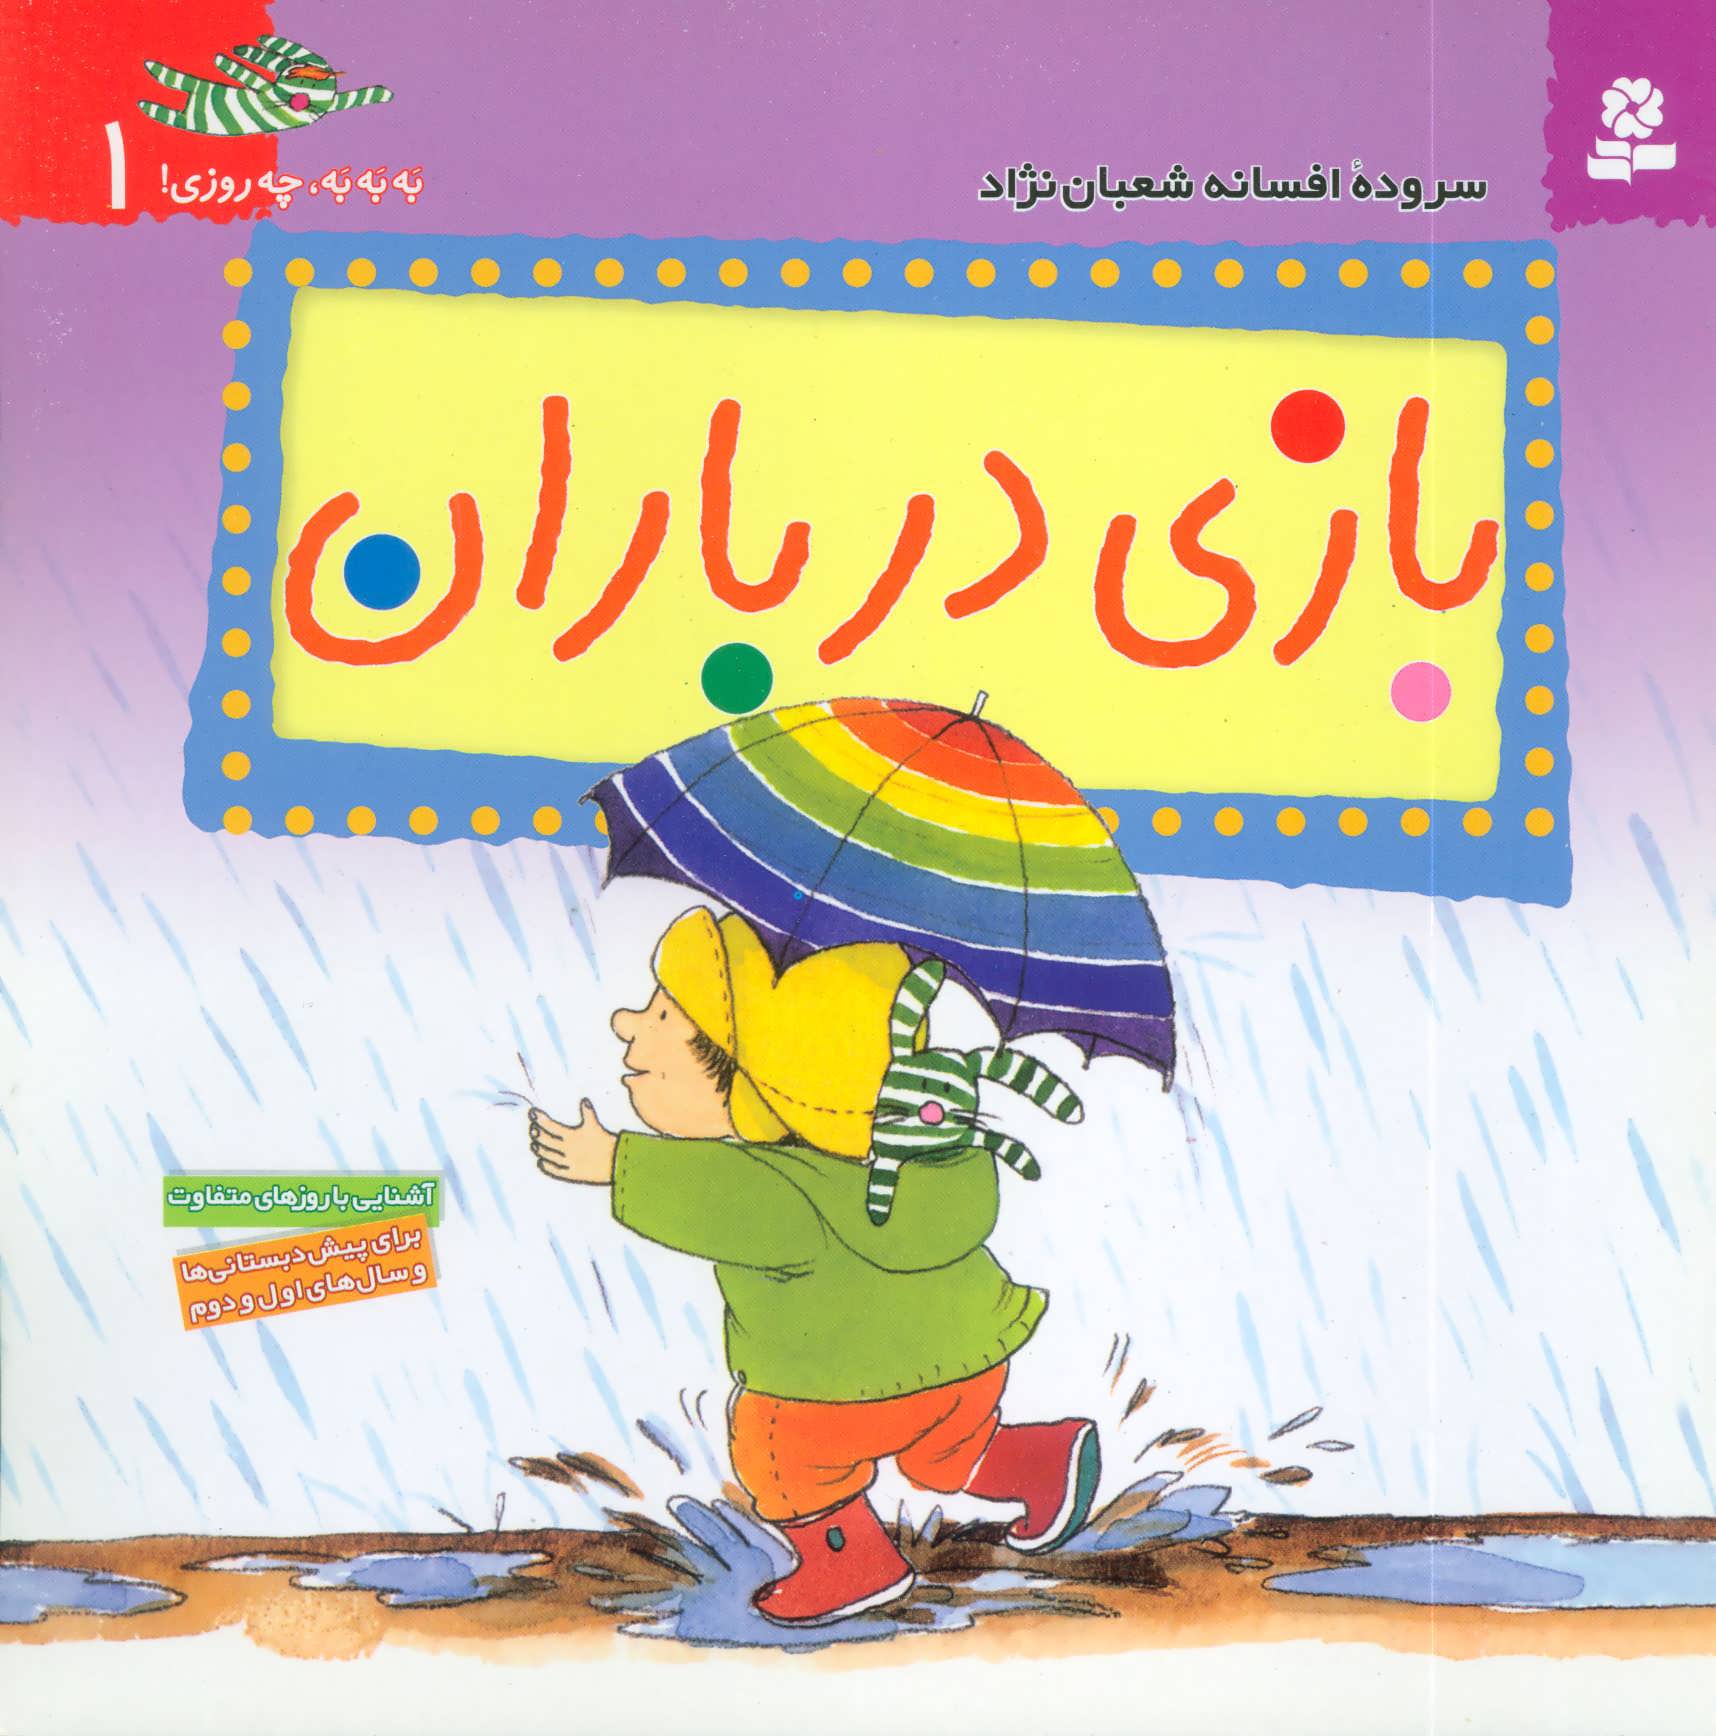 کتاب به به به چه روزی! 1 (بازی در باران)